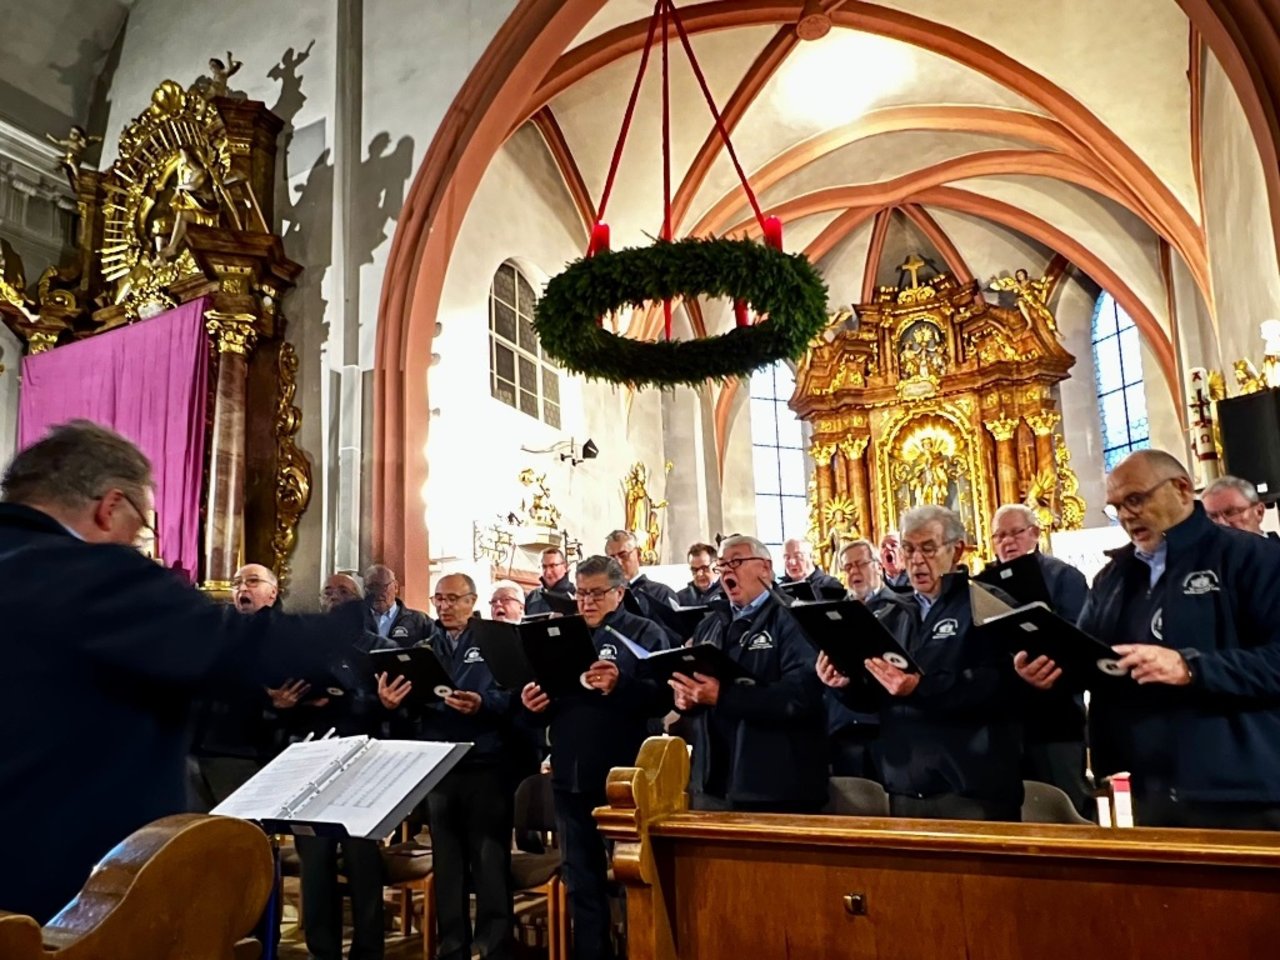 Gesangverein im Steigerwald Burgebrach e.V.